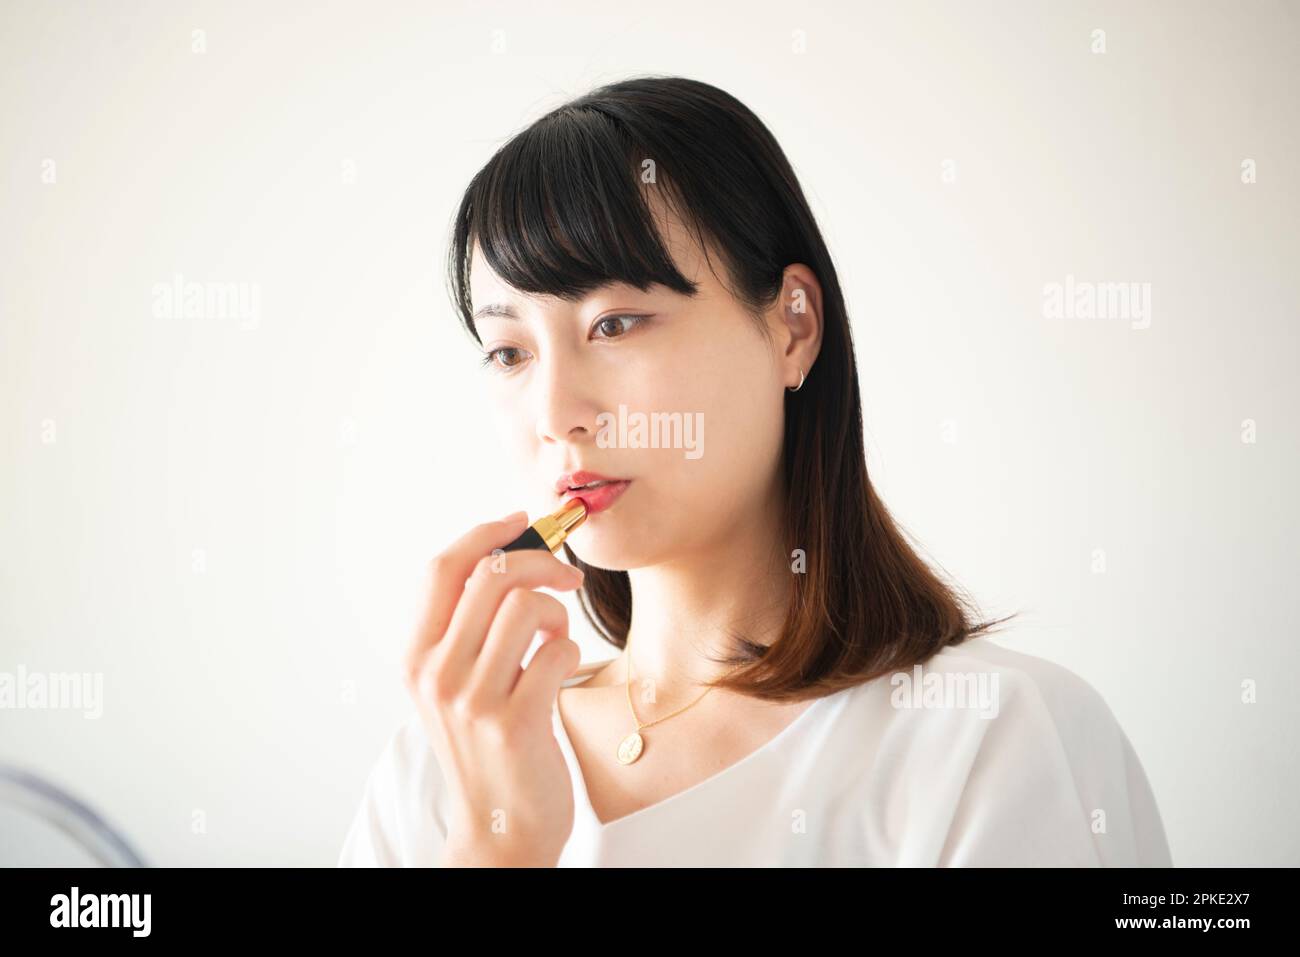 Woman wearing lipstick Stock Photo